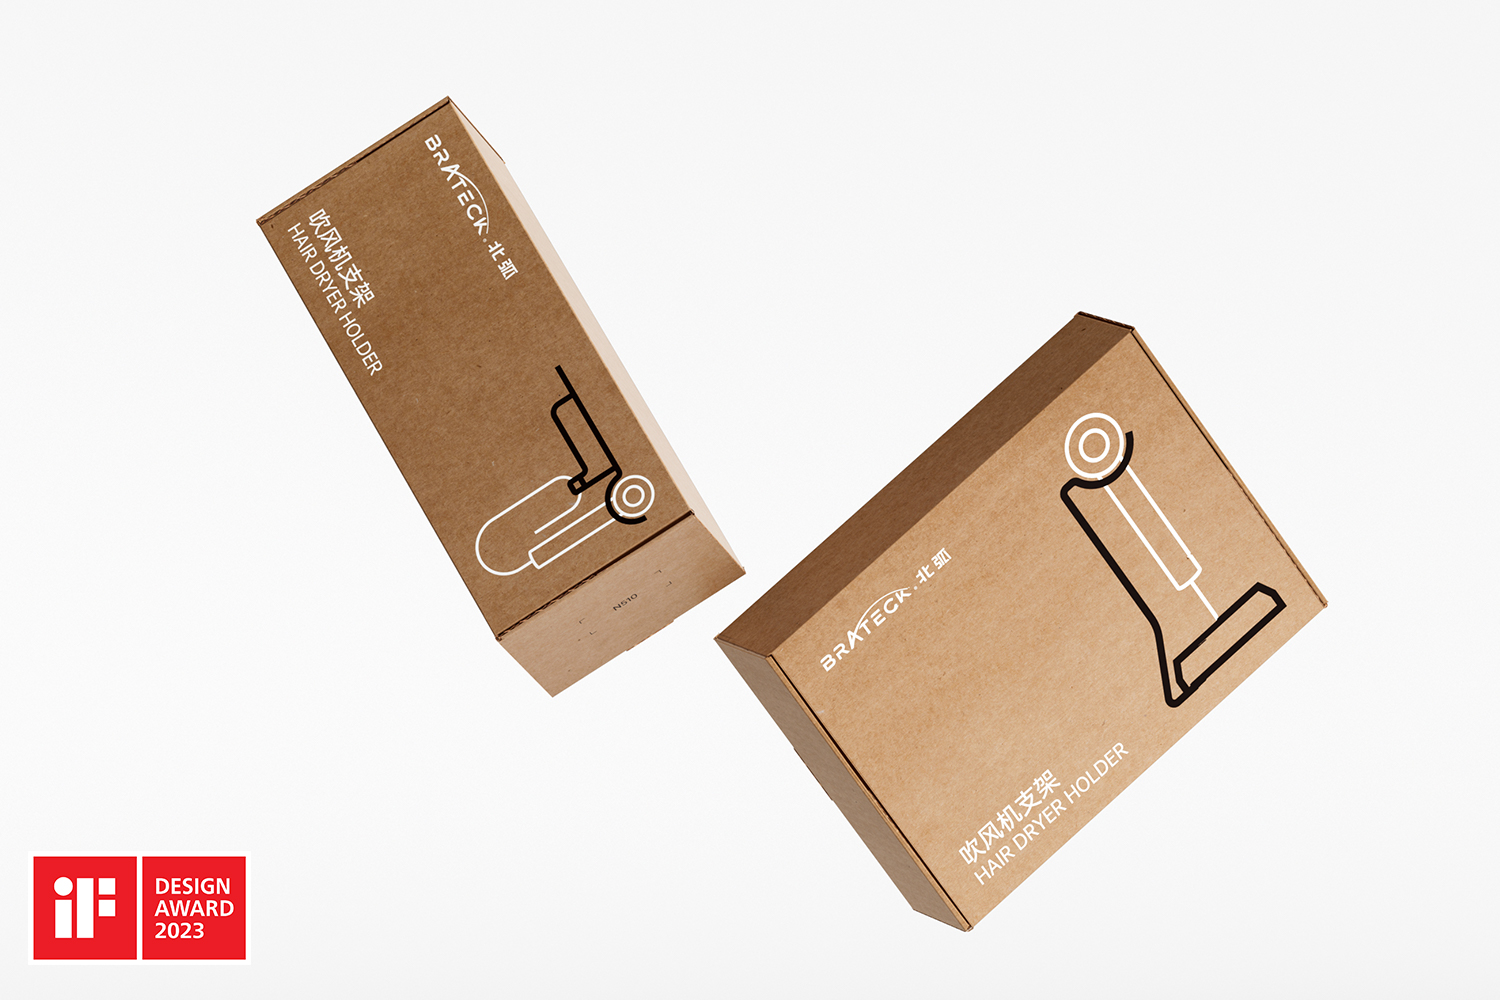 BRATECK Packaging Series